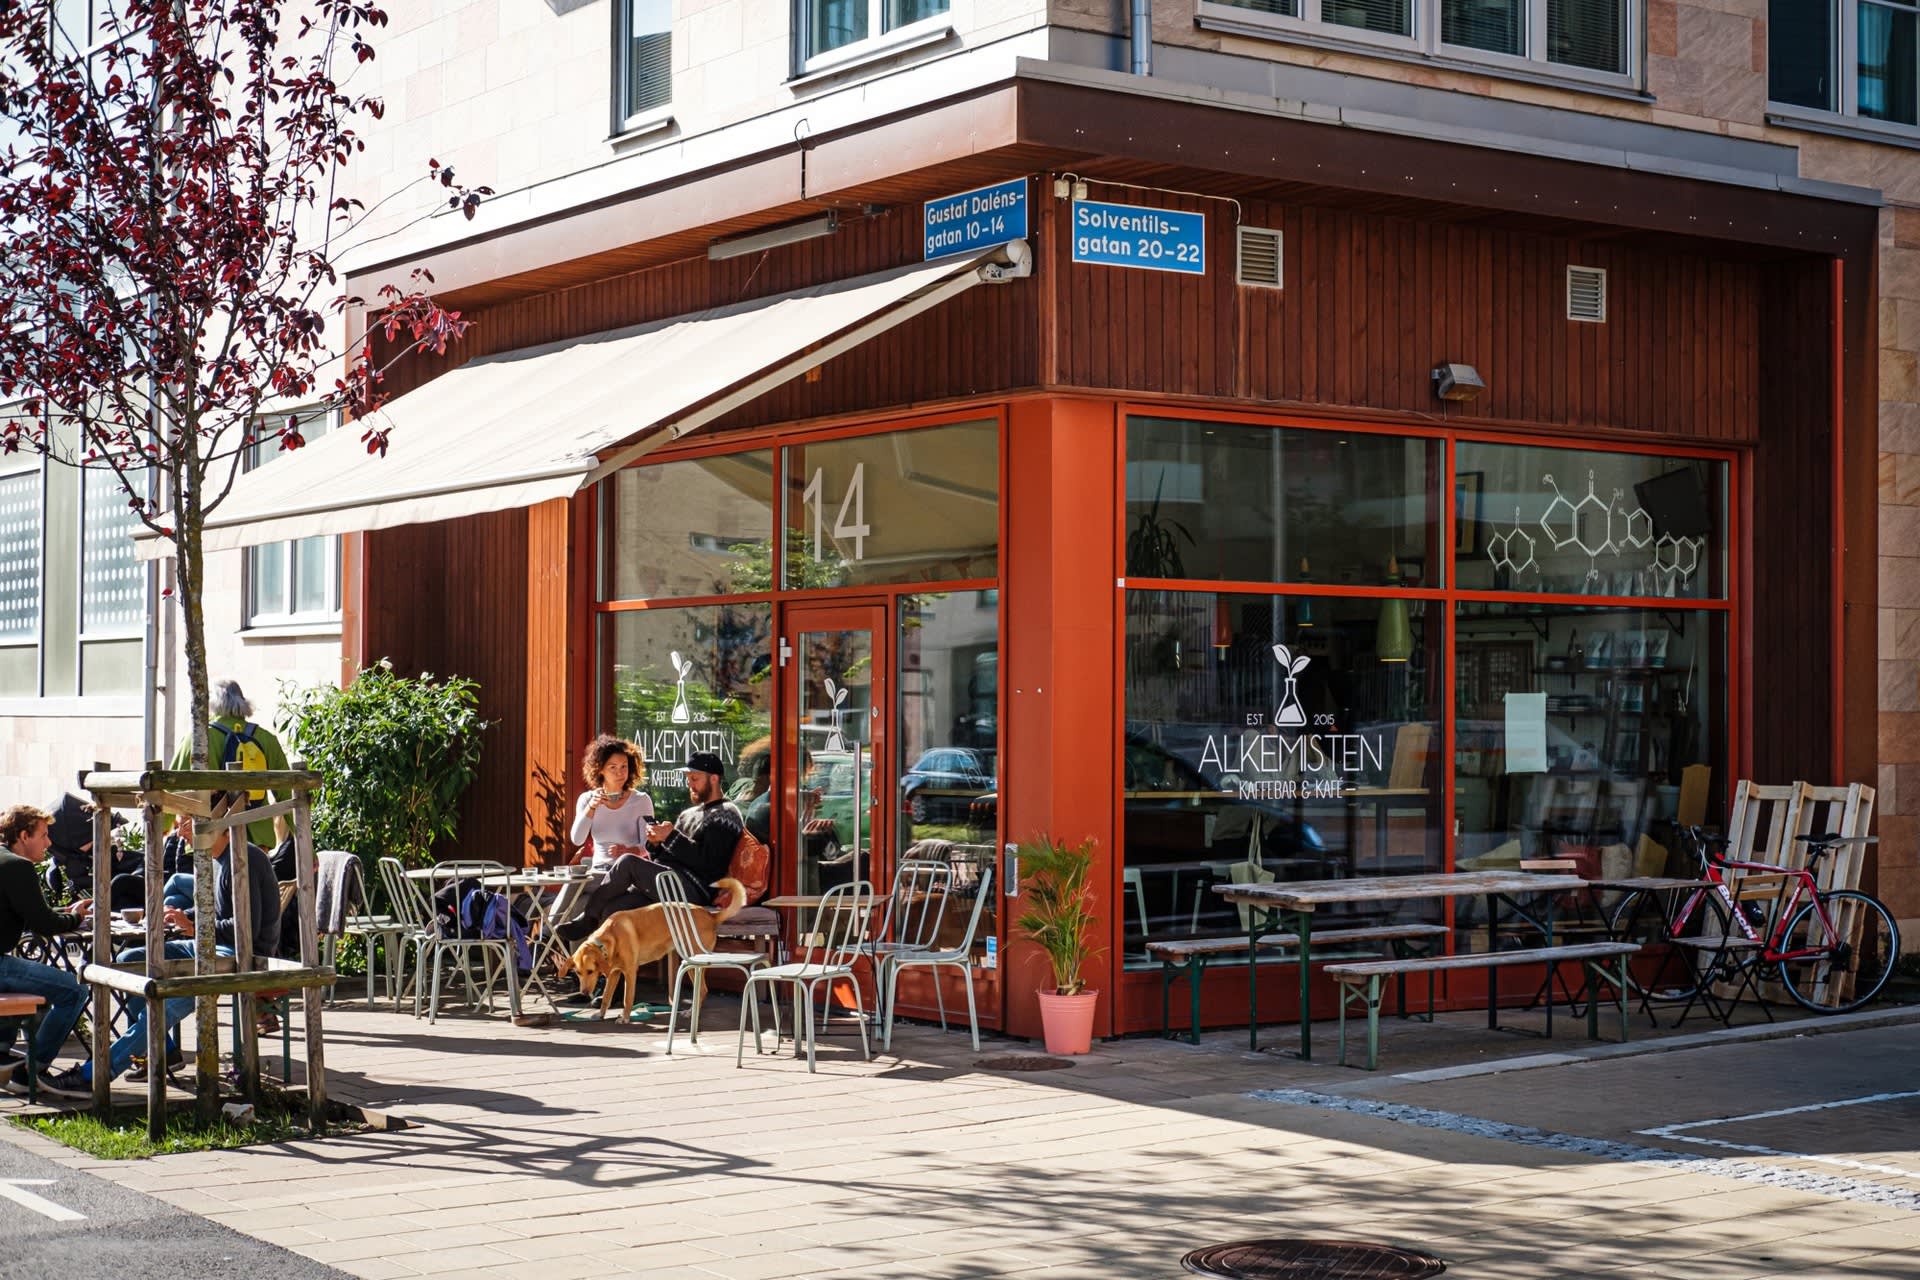 Alkemisten Kaffebar i Kvillebäcken serverar ekologiskt specialkaffe och lokalt producerad mat